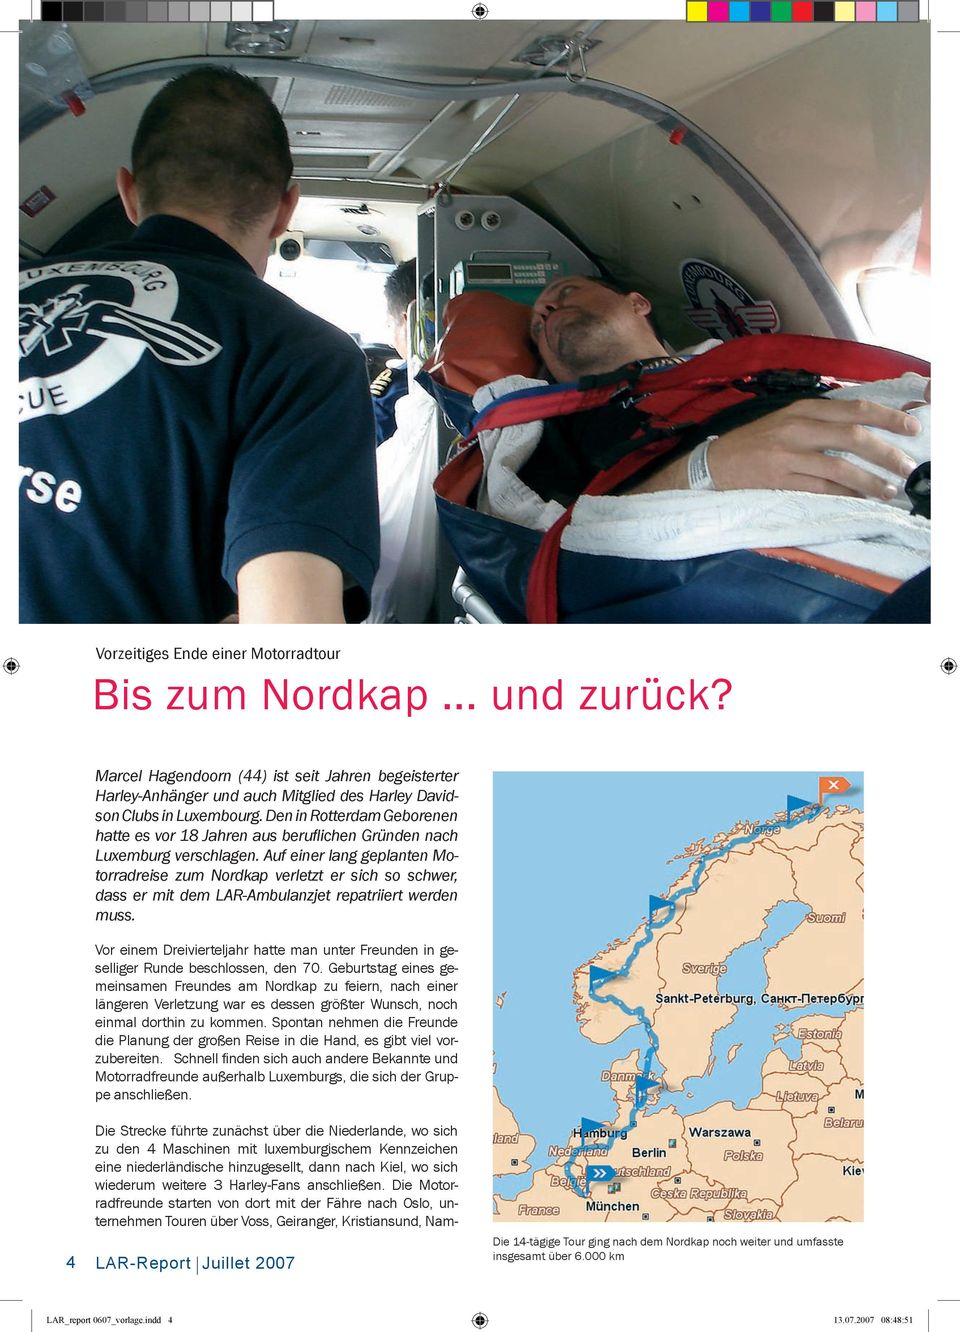 Auf einer lang geplanten Motorradreise zum Nordkap verletzt er sich so schwer, dass er mit dem LAR-Ambulanzjet repatriiert werden muss.